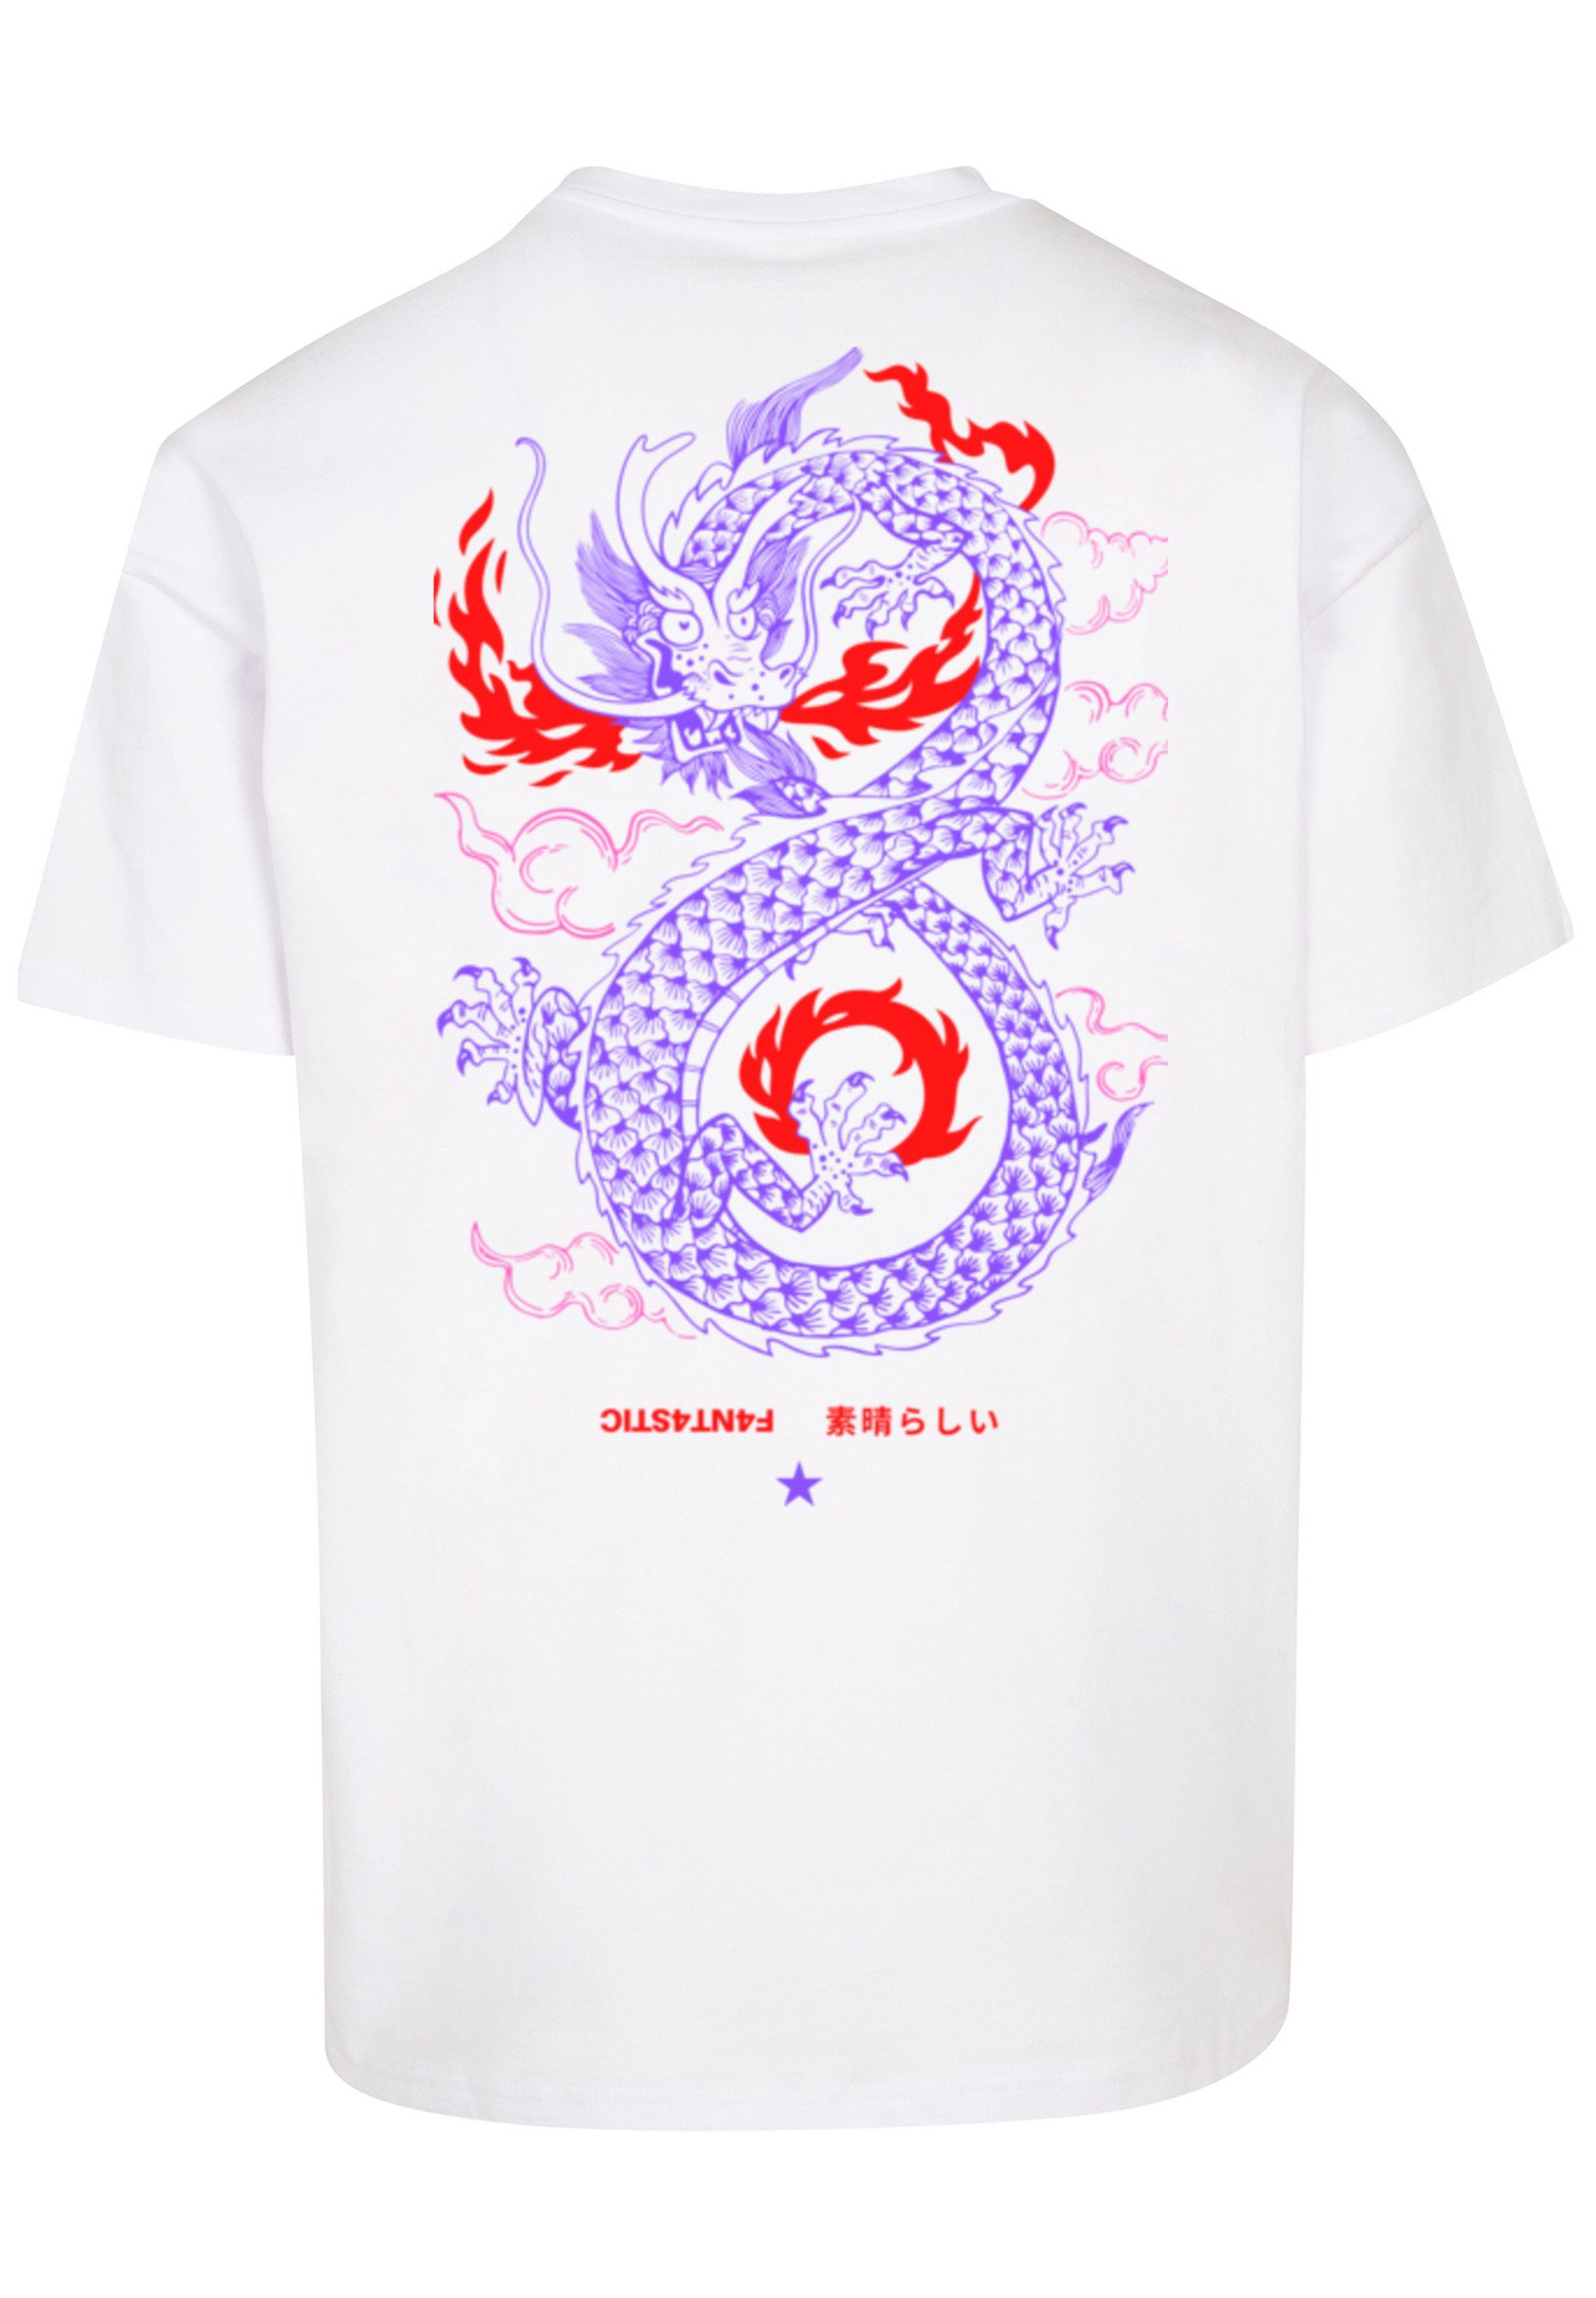 Feuer Drache weiß Print Japan F4NT4STIC T-Shirt